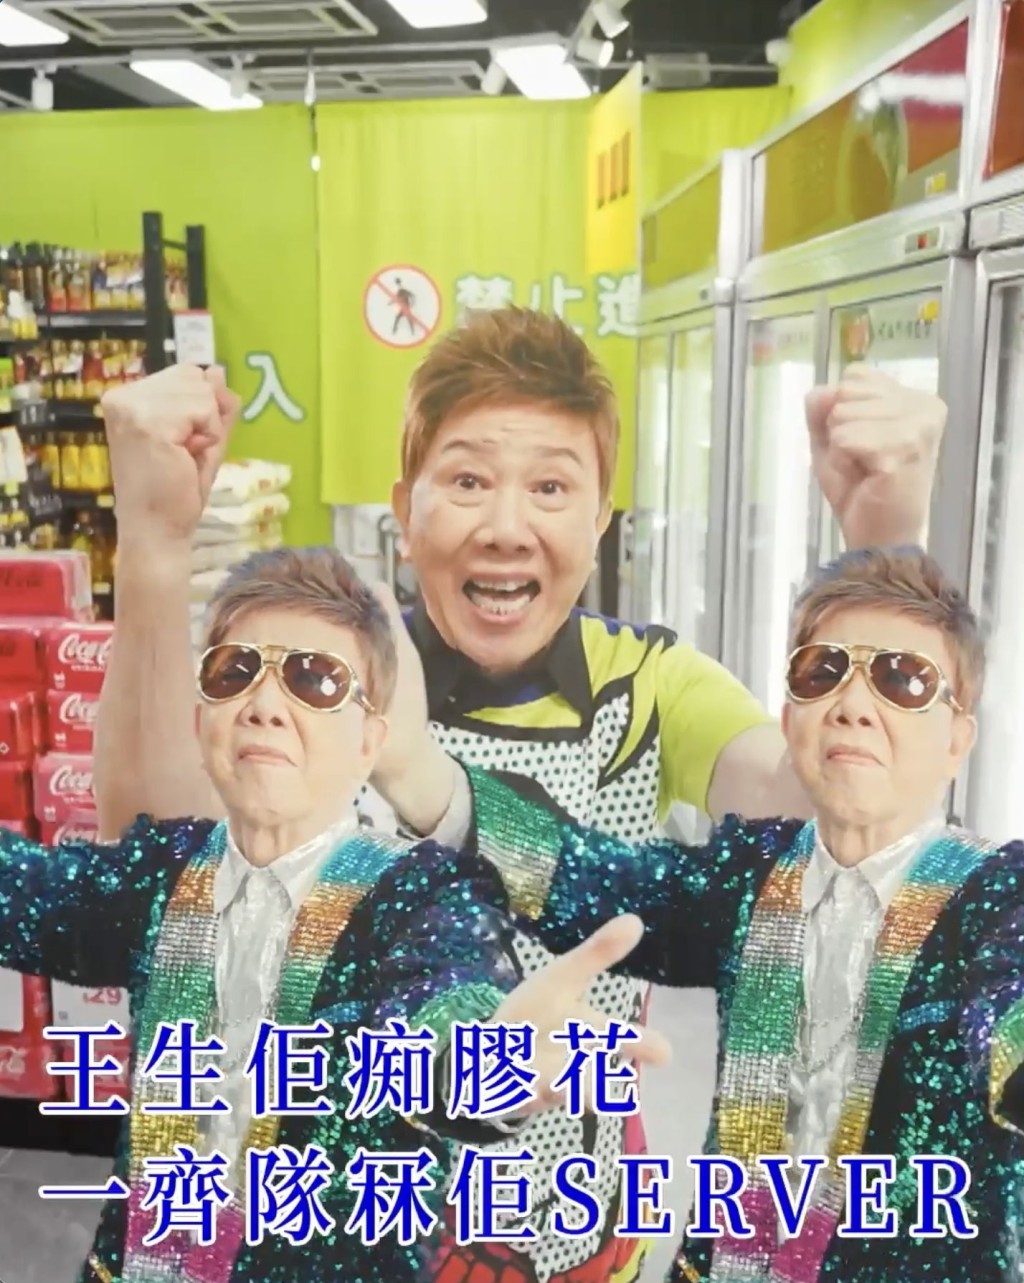 早前尹光為網上購物平台改詞唱《少理阿爸》一樣好受歡迎。